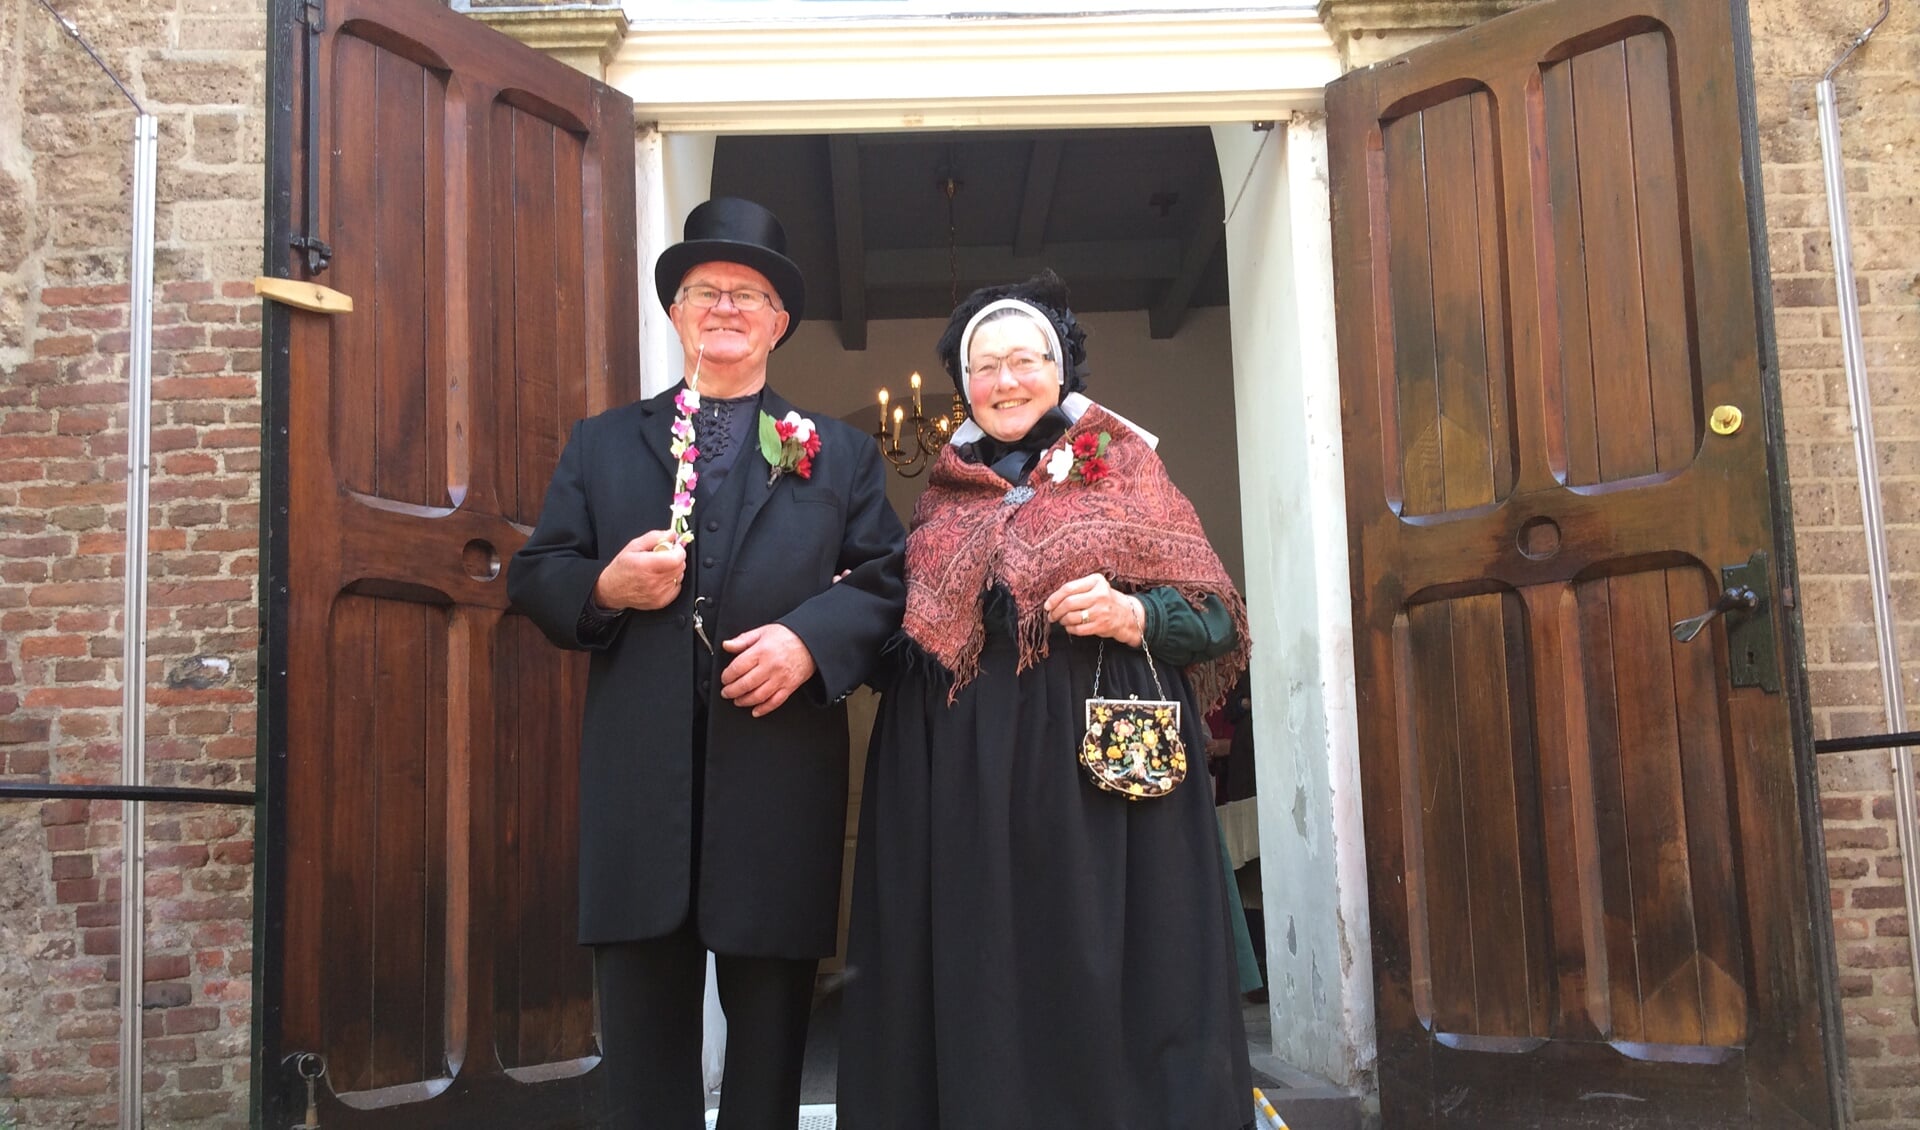 Gerrie en Gerrit Harmsen in folklorekleding voor de Sint Martinuskerk in Warnsveld waarvan Gerrit koster is. Foto: PR